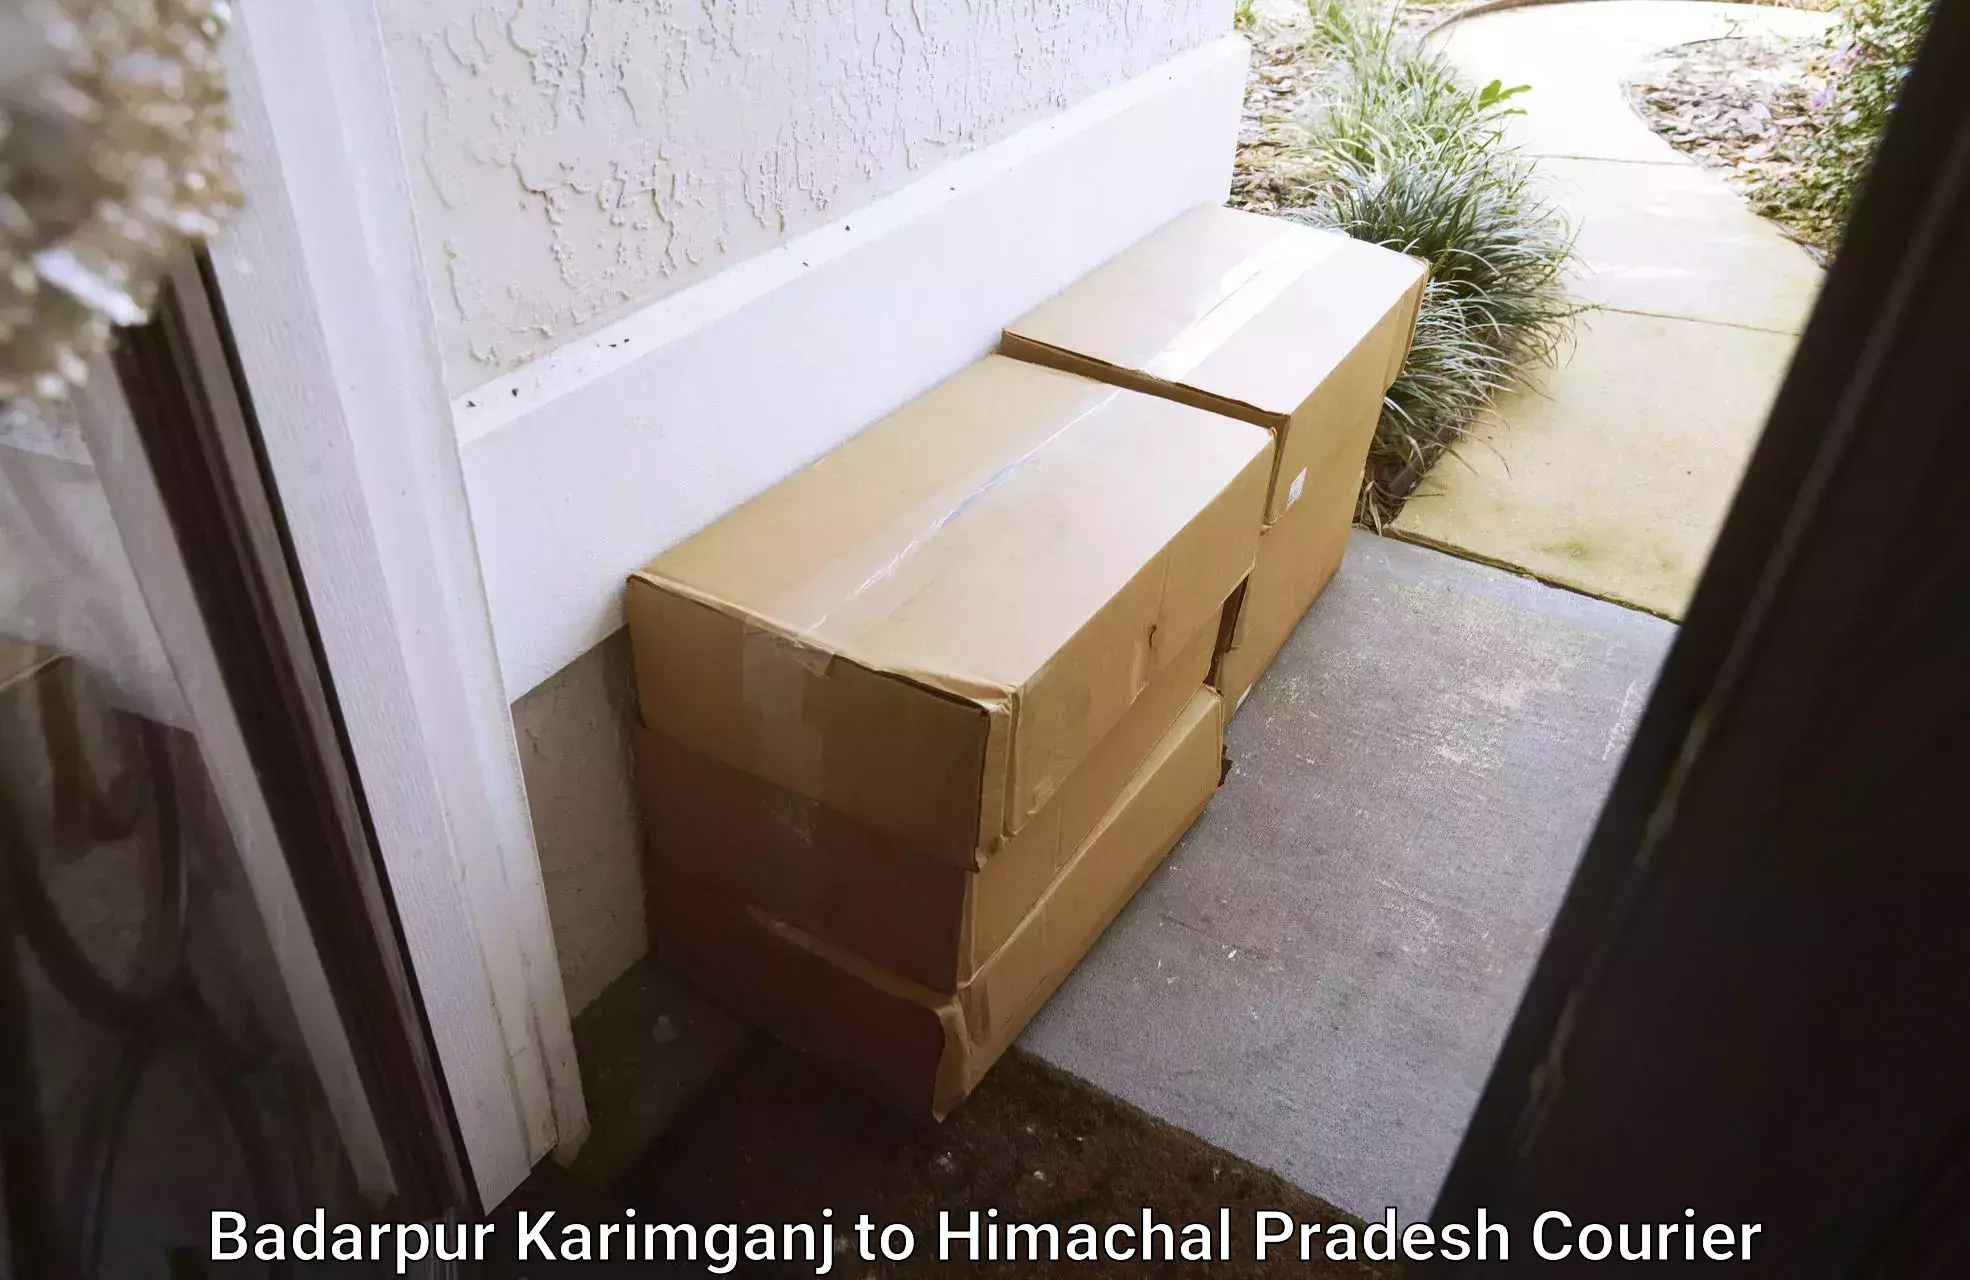 Affordable parcel service Badarpur Karimganj to Naina Devi